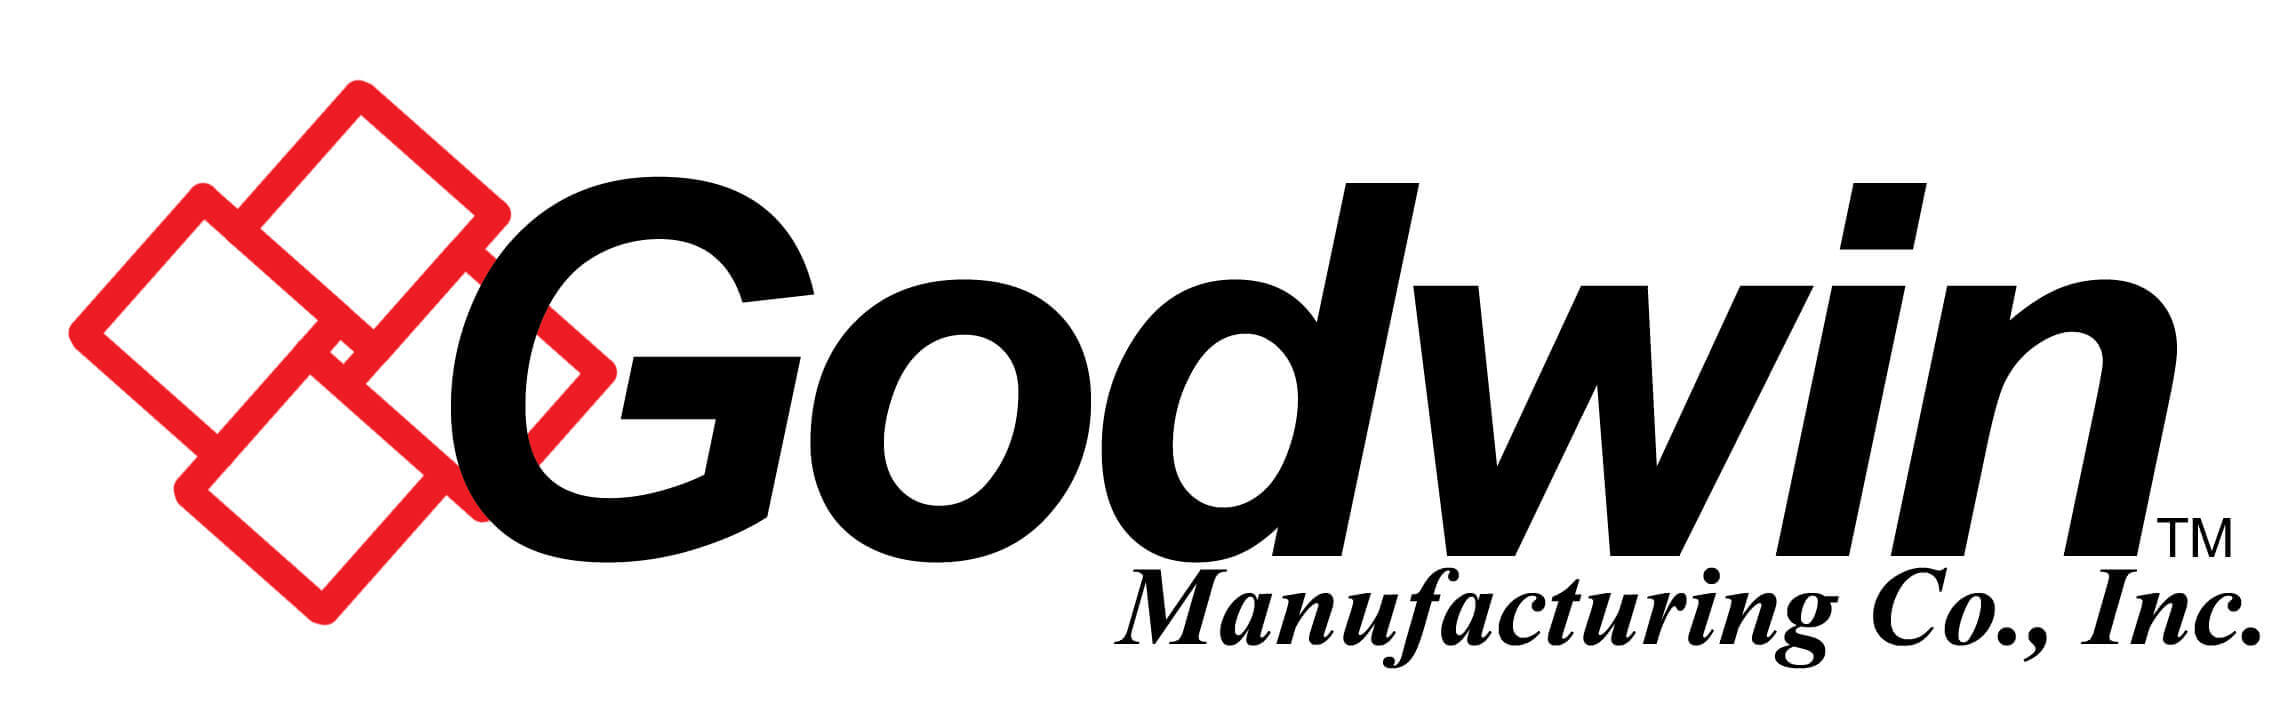 Godwin logo image